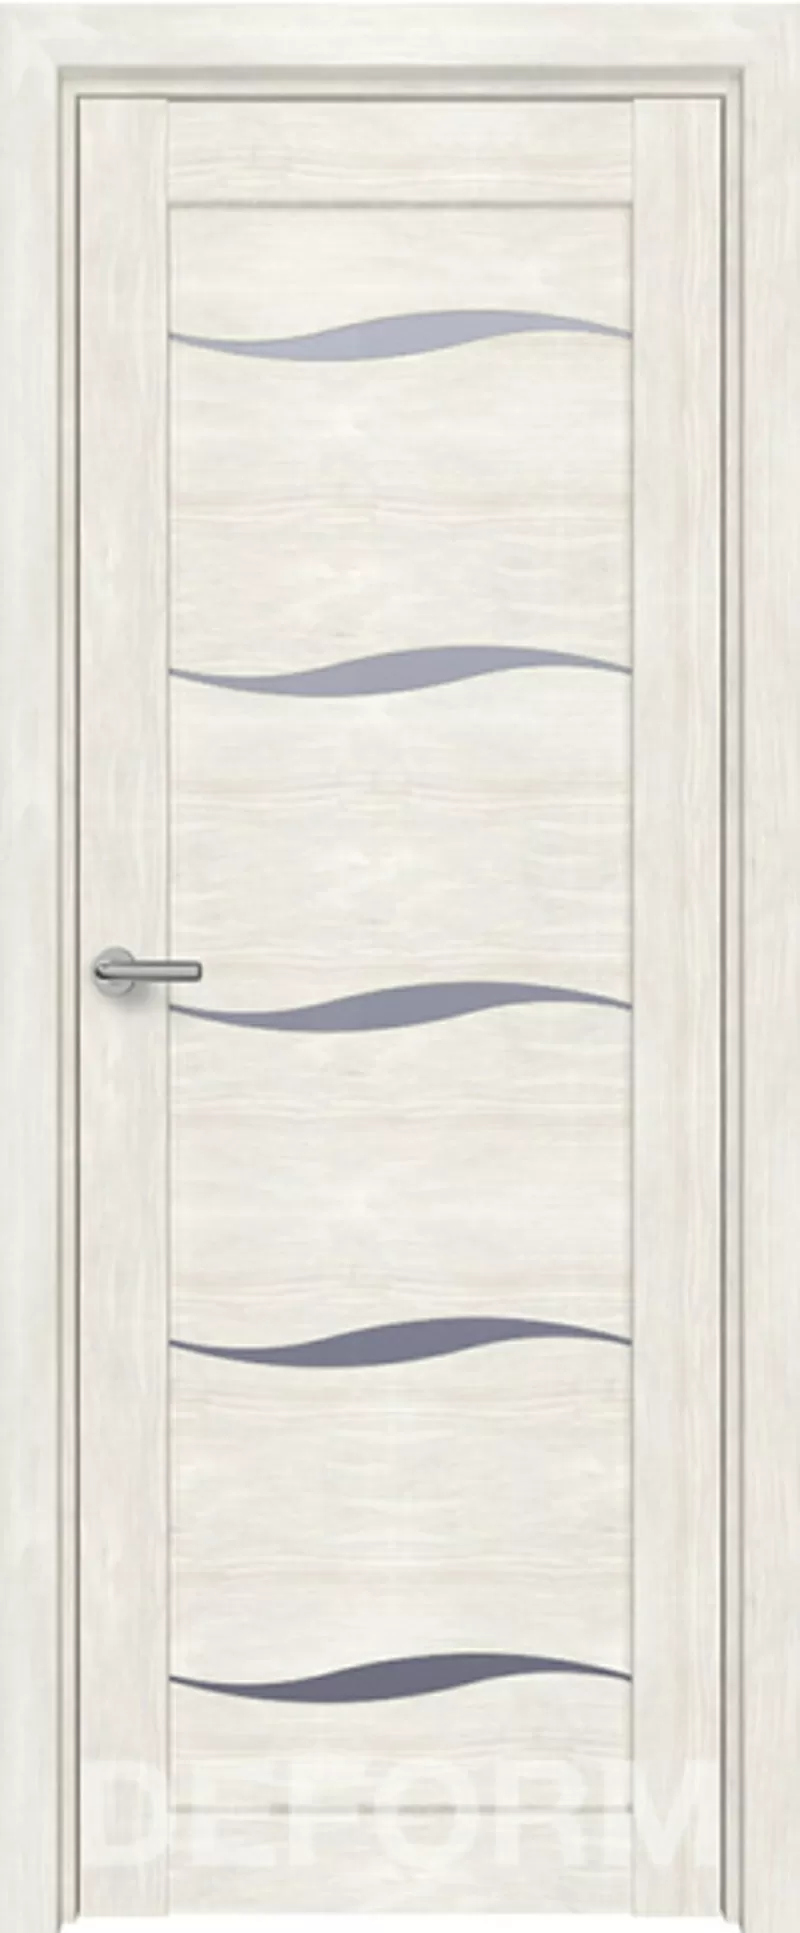 Межкомнатные двери МДФ от 80 руб за комплект. Ручки в подарок